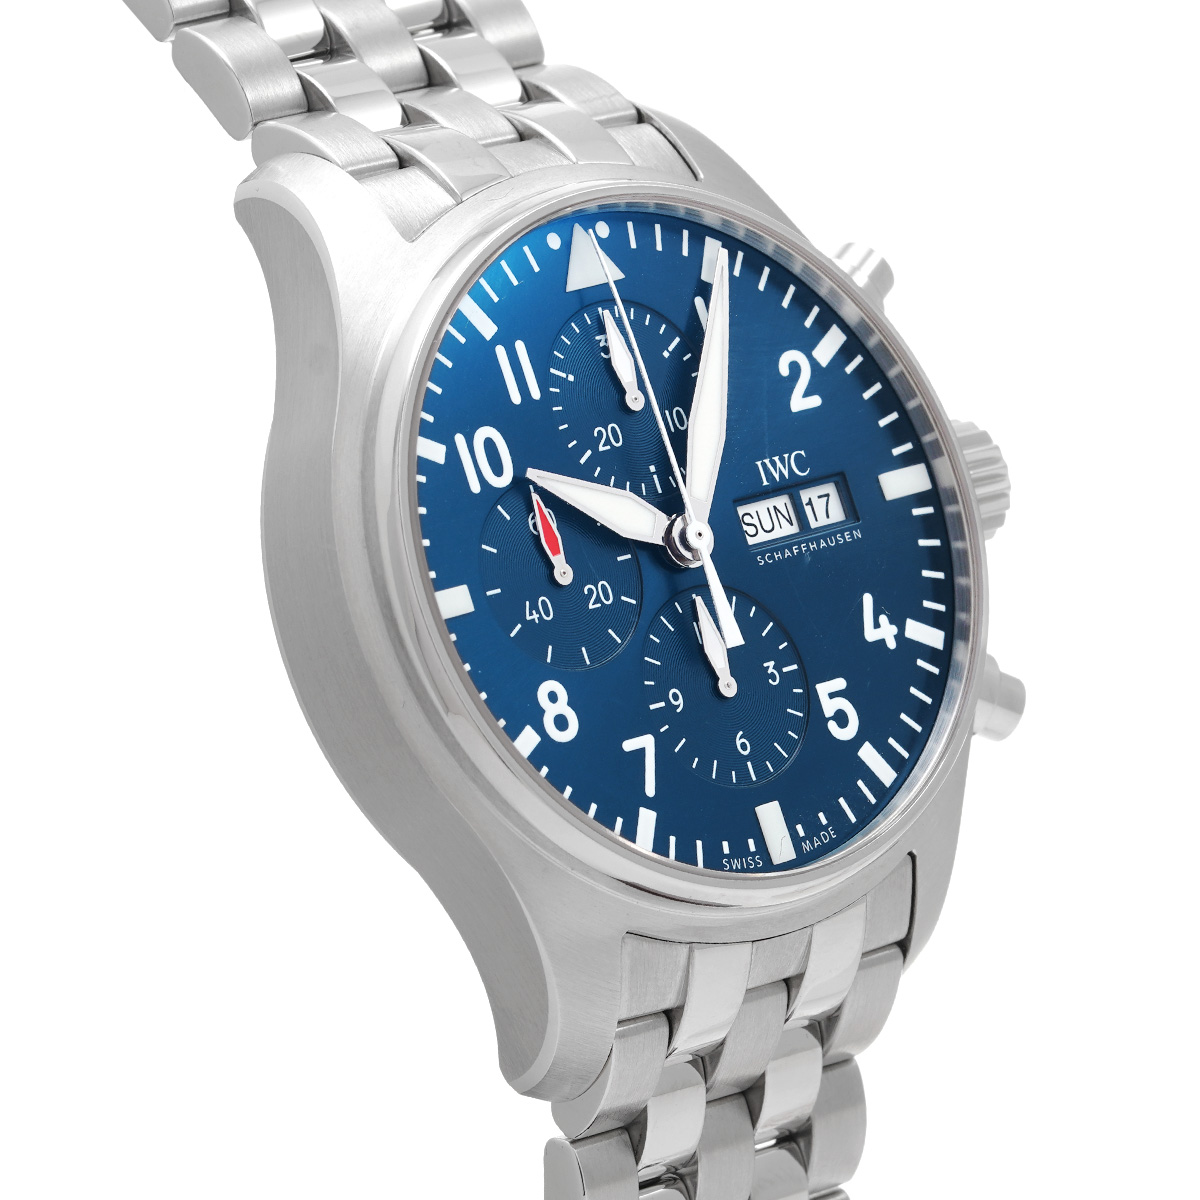 インターナショナルウォッチカンパニー IWC IW377717 ブルー メンズ 腕時計